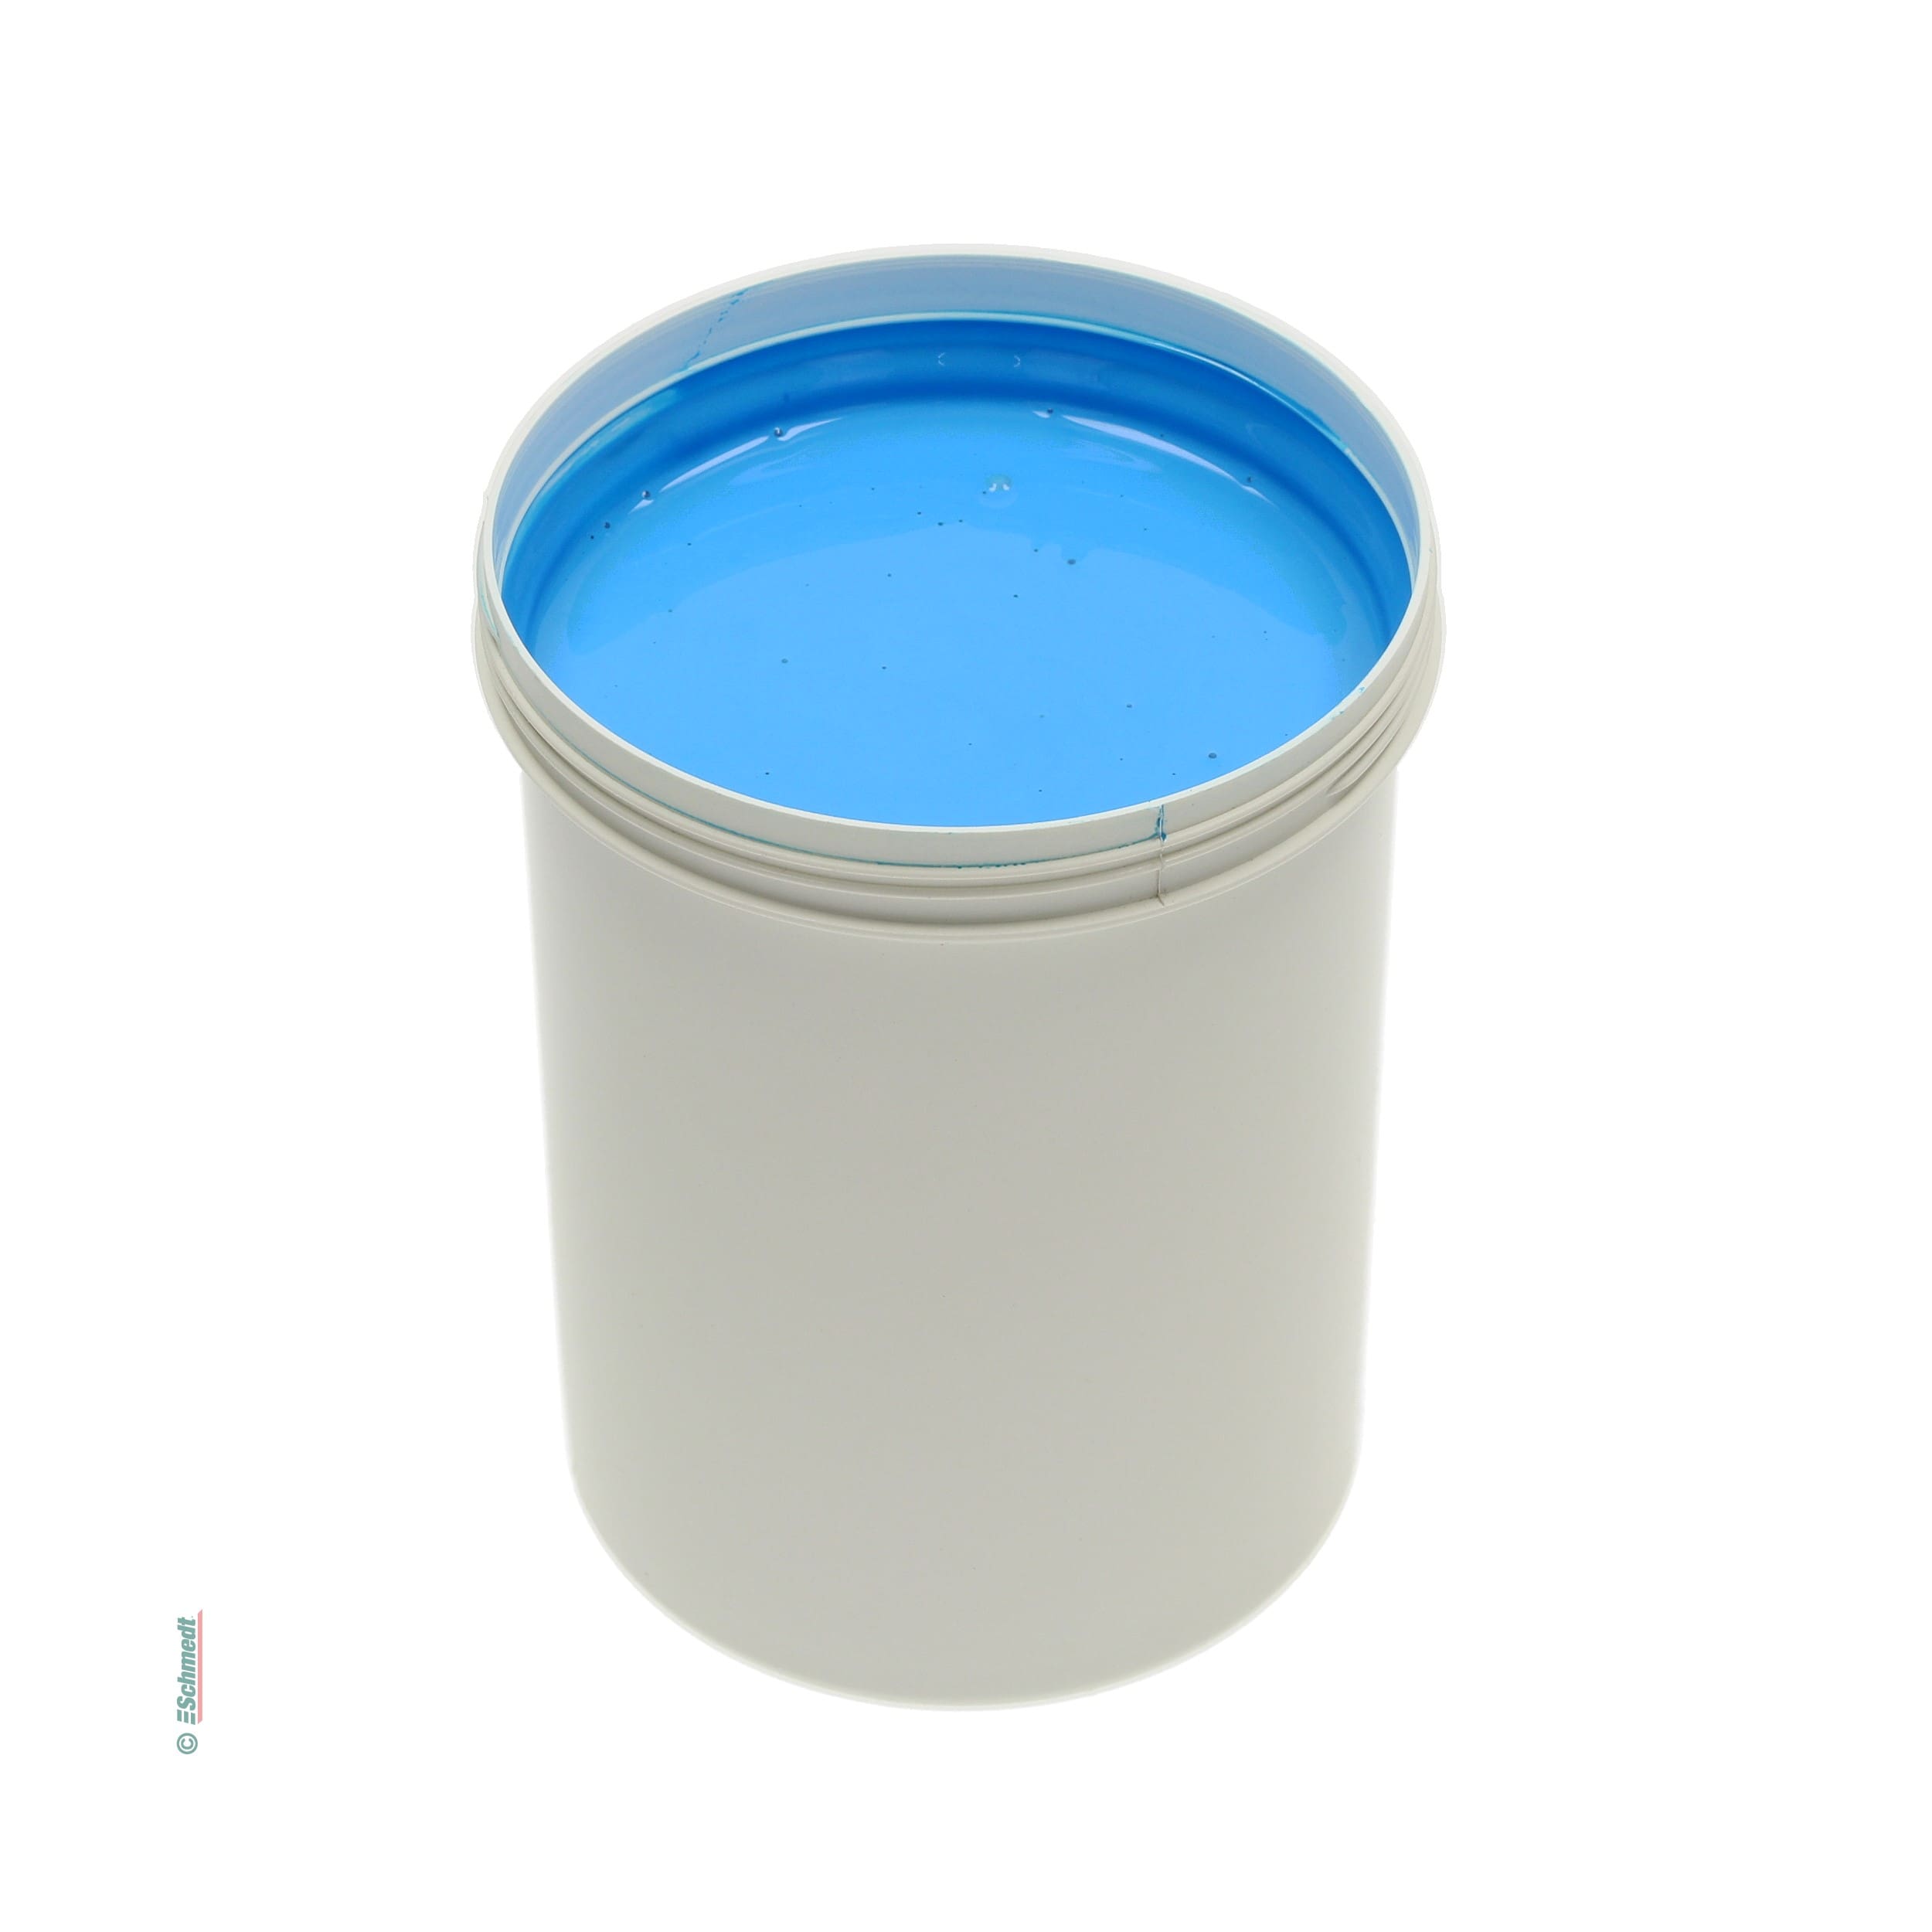 Pintura para cola - Color azul oscuro - Contenido Botella / 990 ml - para darle color a las colas de dispersión como, por ejemplo, cola para... - imagen-1